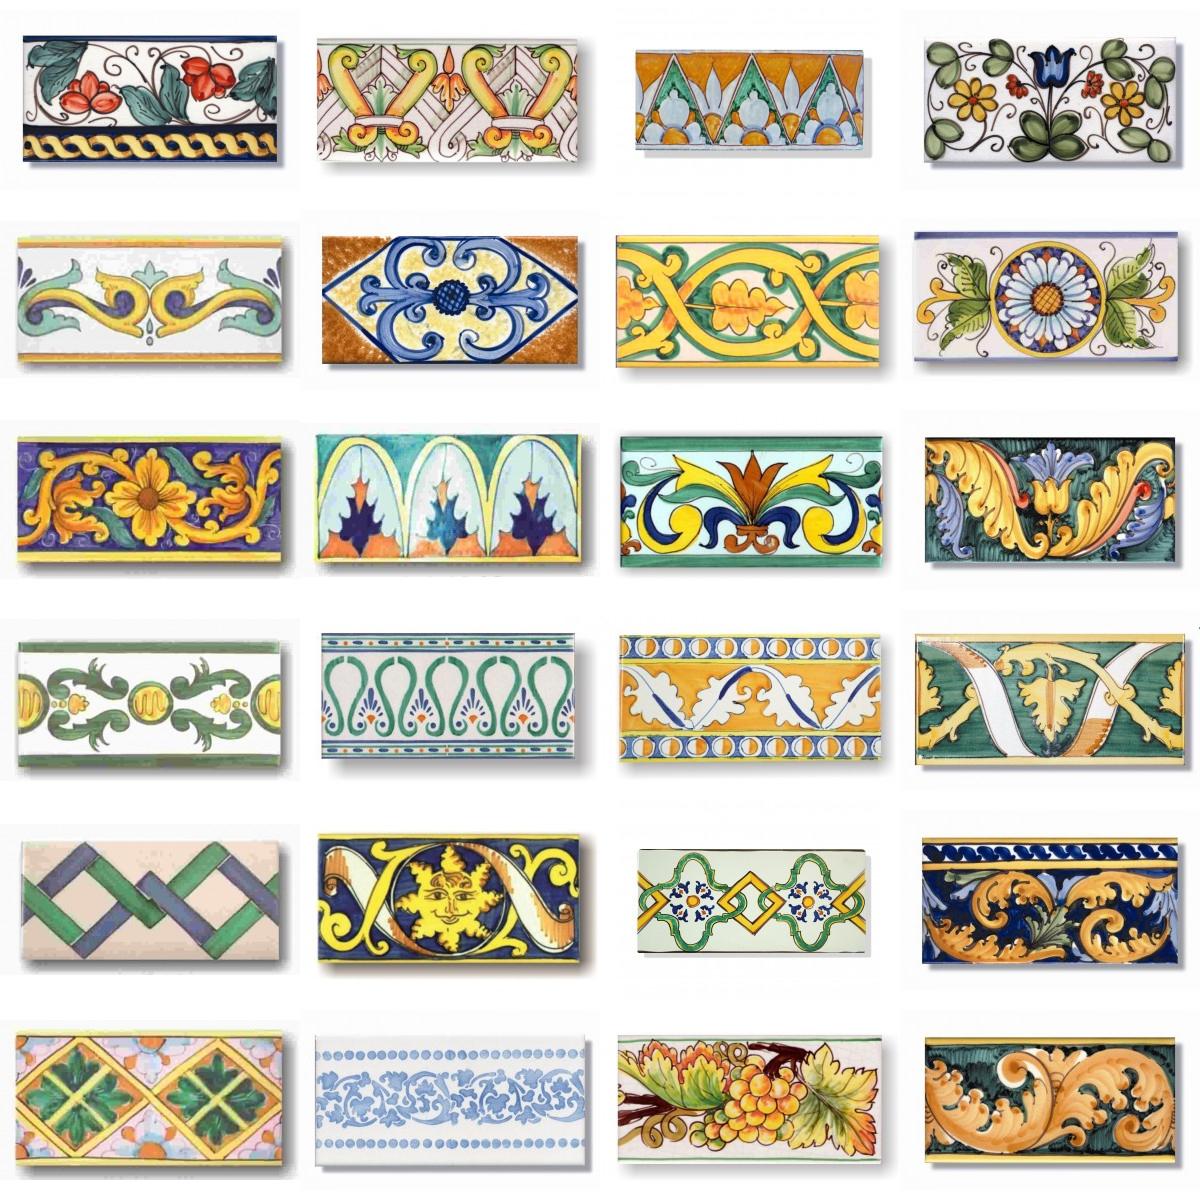 Bordure decorate per rivestimenti in piastrelle di maiolica, by Desuir